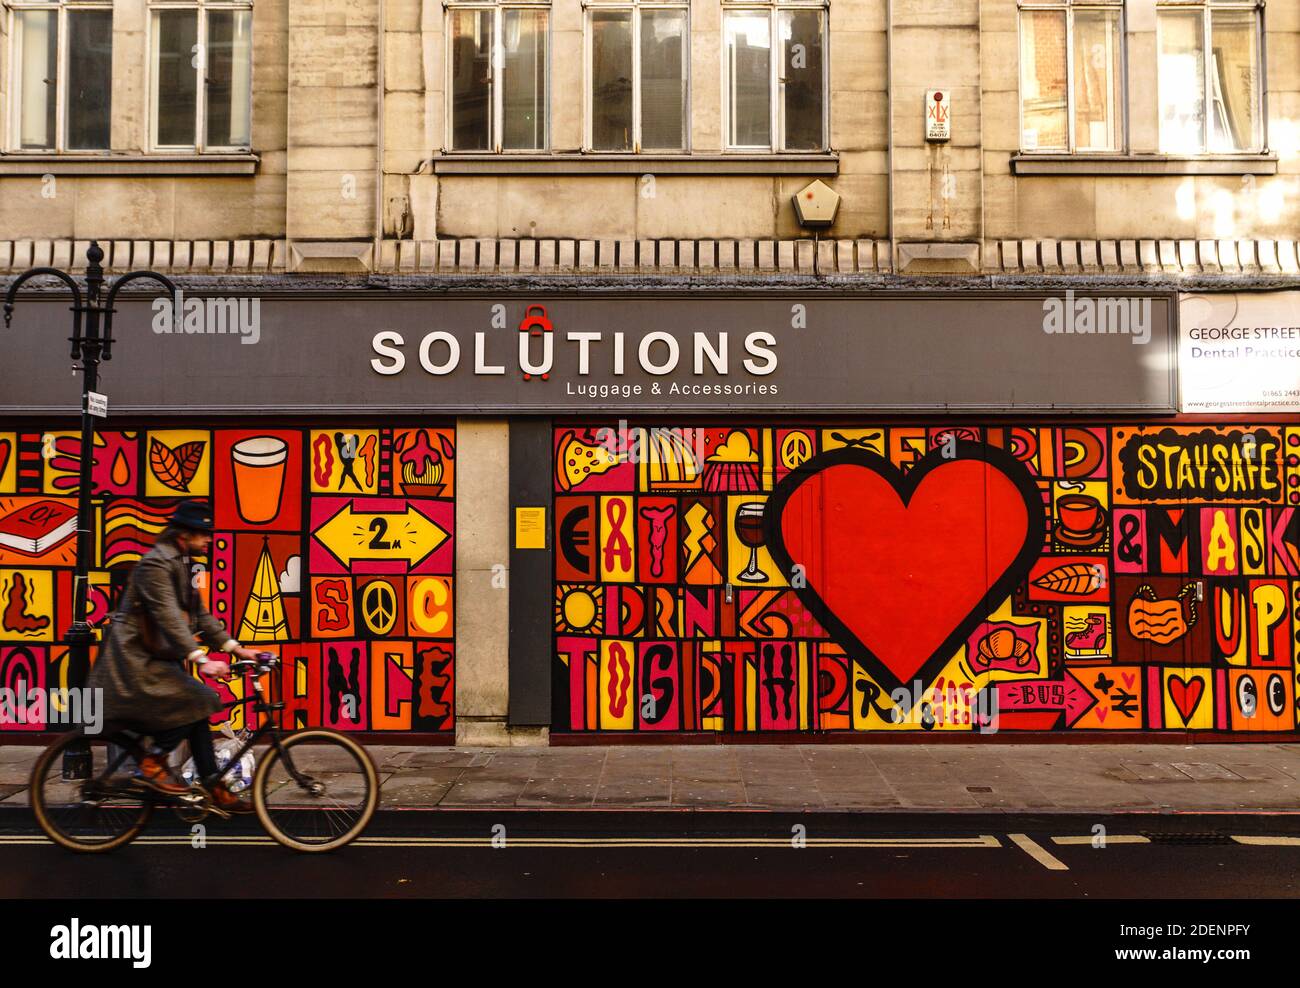 Ein im Stadtzentrum von Oxford in Auftrag gegebenes Wandgemälde des internationalen Künstlers Luke Embden, das an der Außenseite eines geschlossenen Geschäftsgebäudes ausgestellt ist. Stockfoto